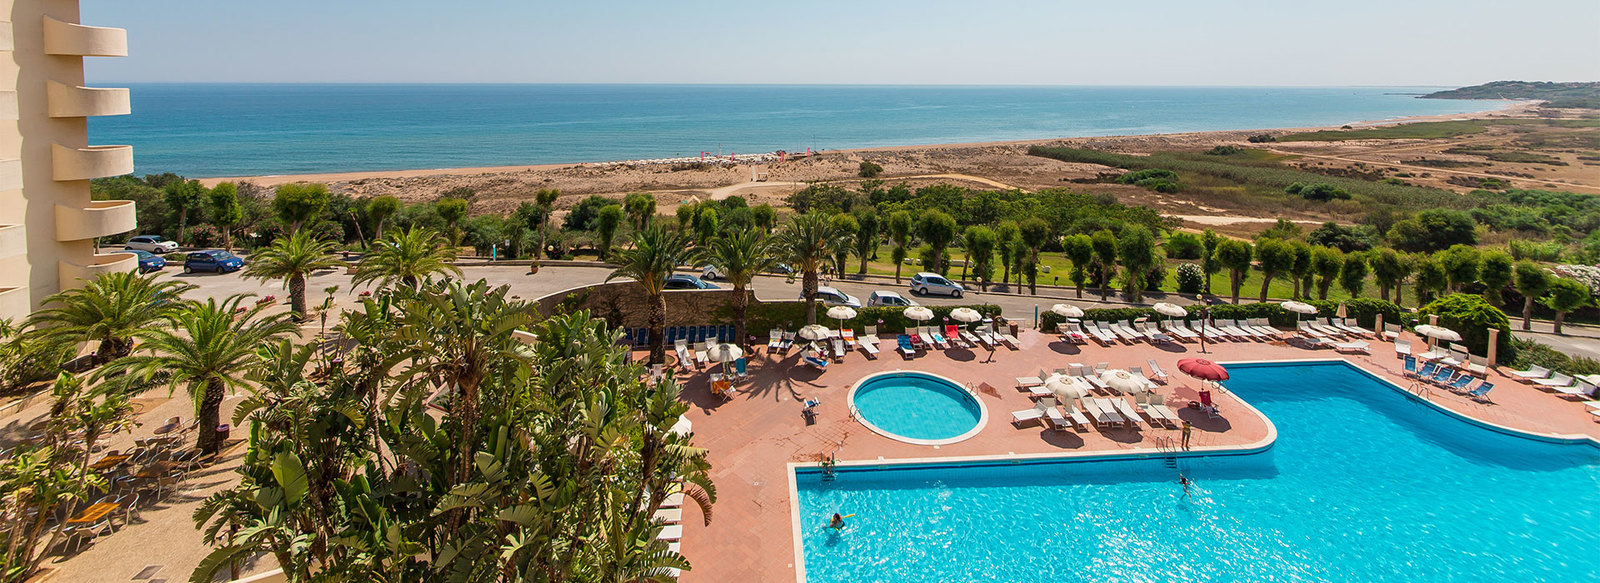 Miglior prezzo Nicolaus Club Paradise Beach - Selinunte - Sicilia